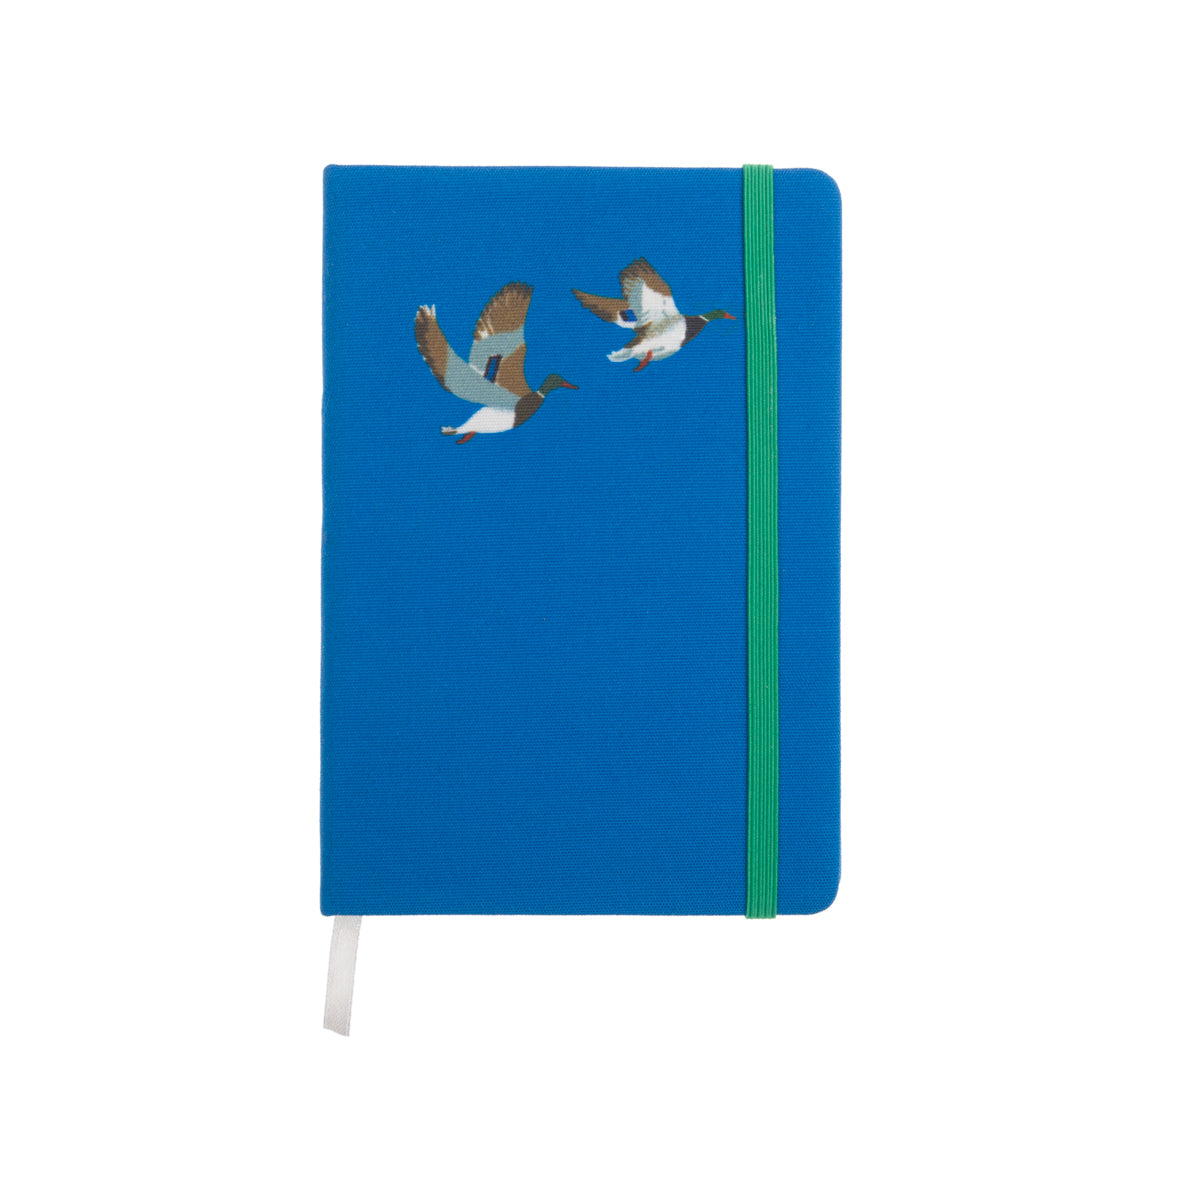 B6 notebook in Sophie Allport's Duck design